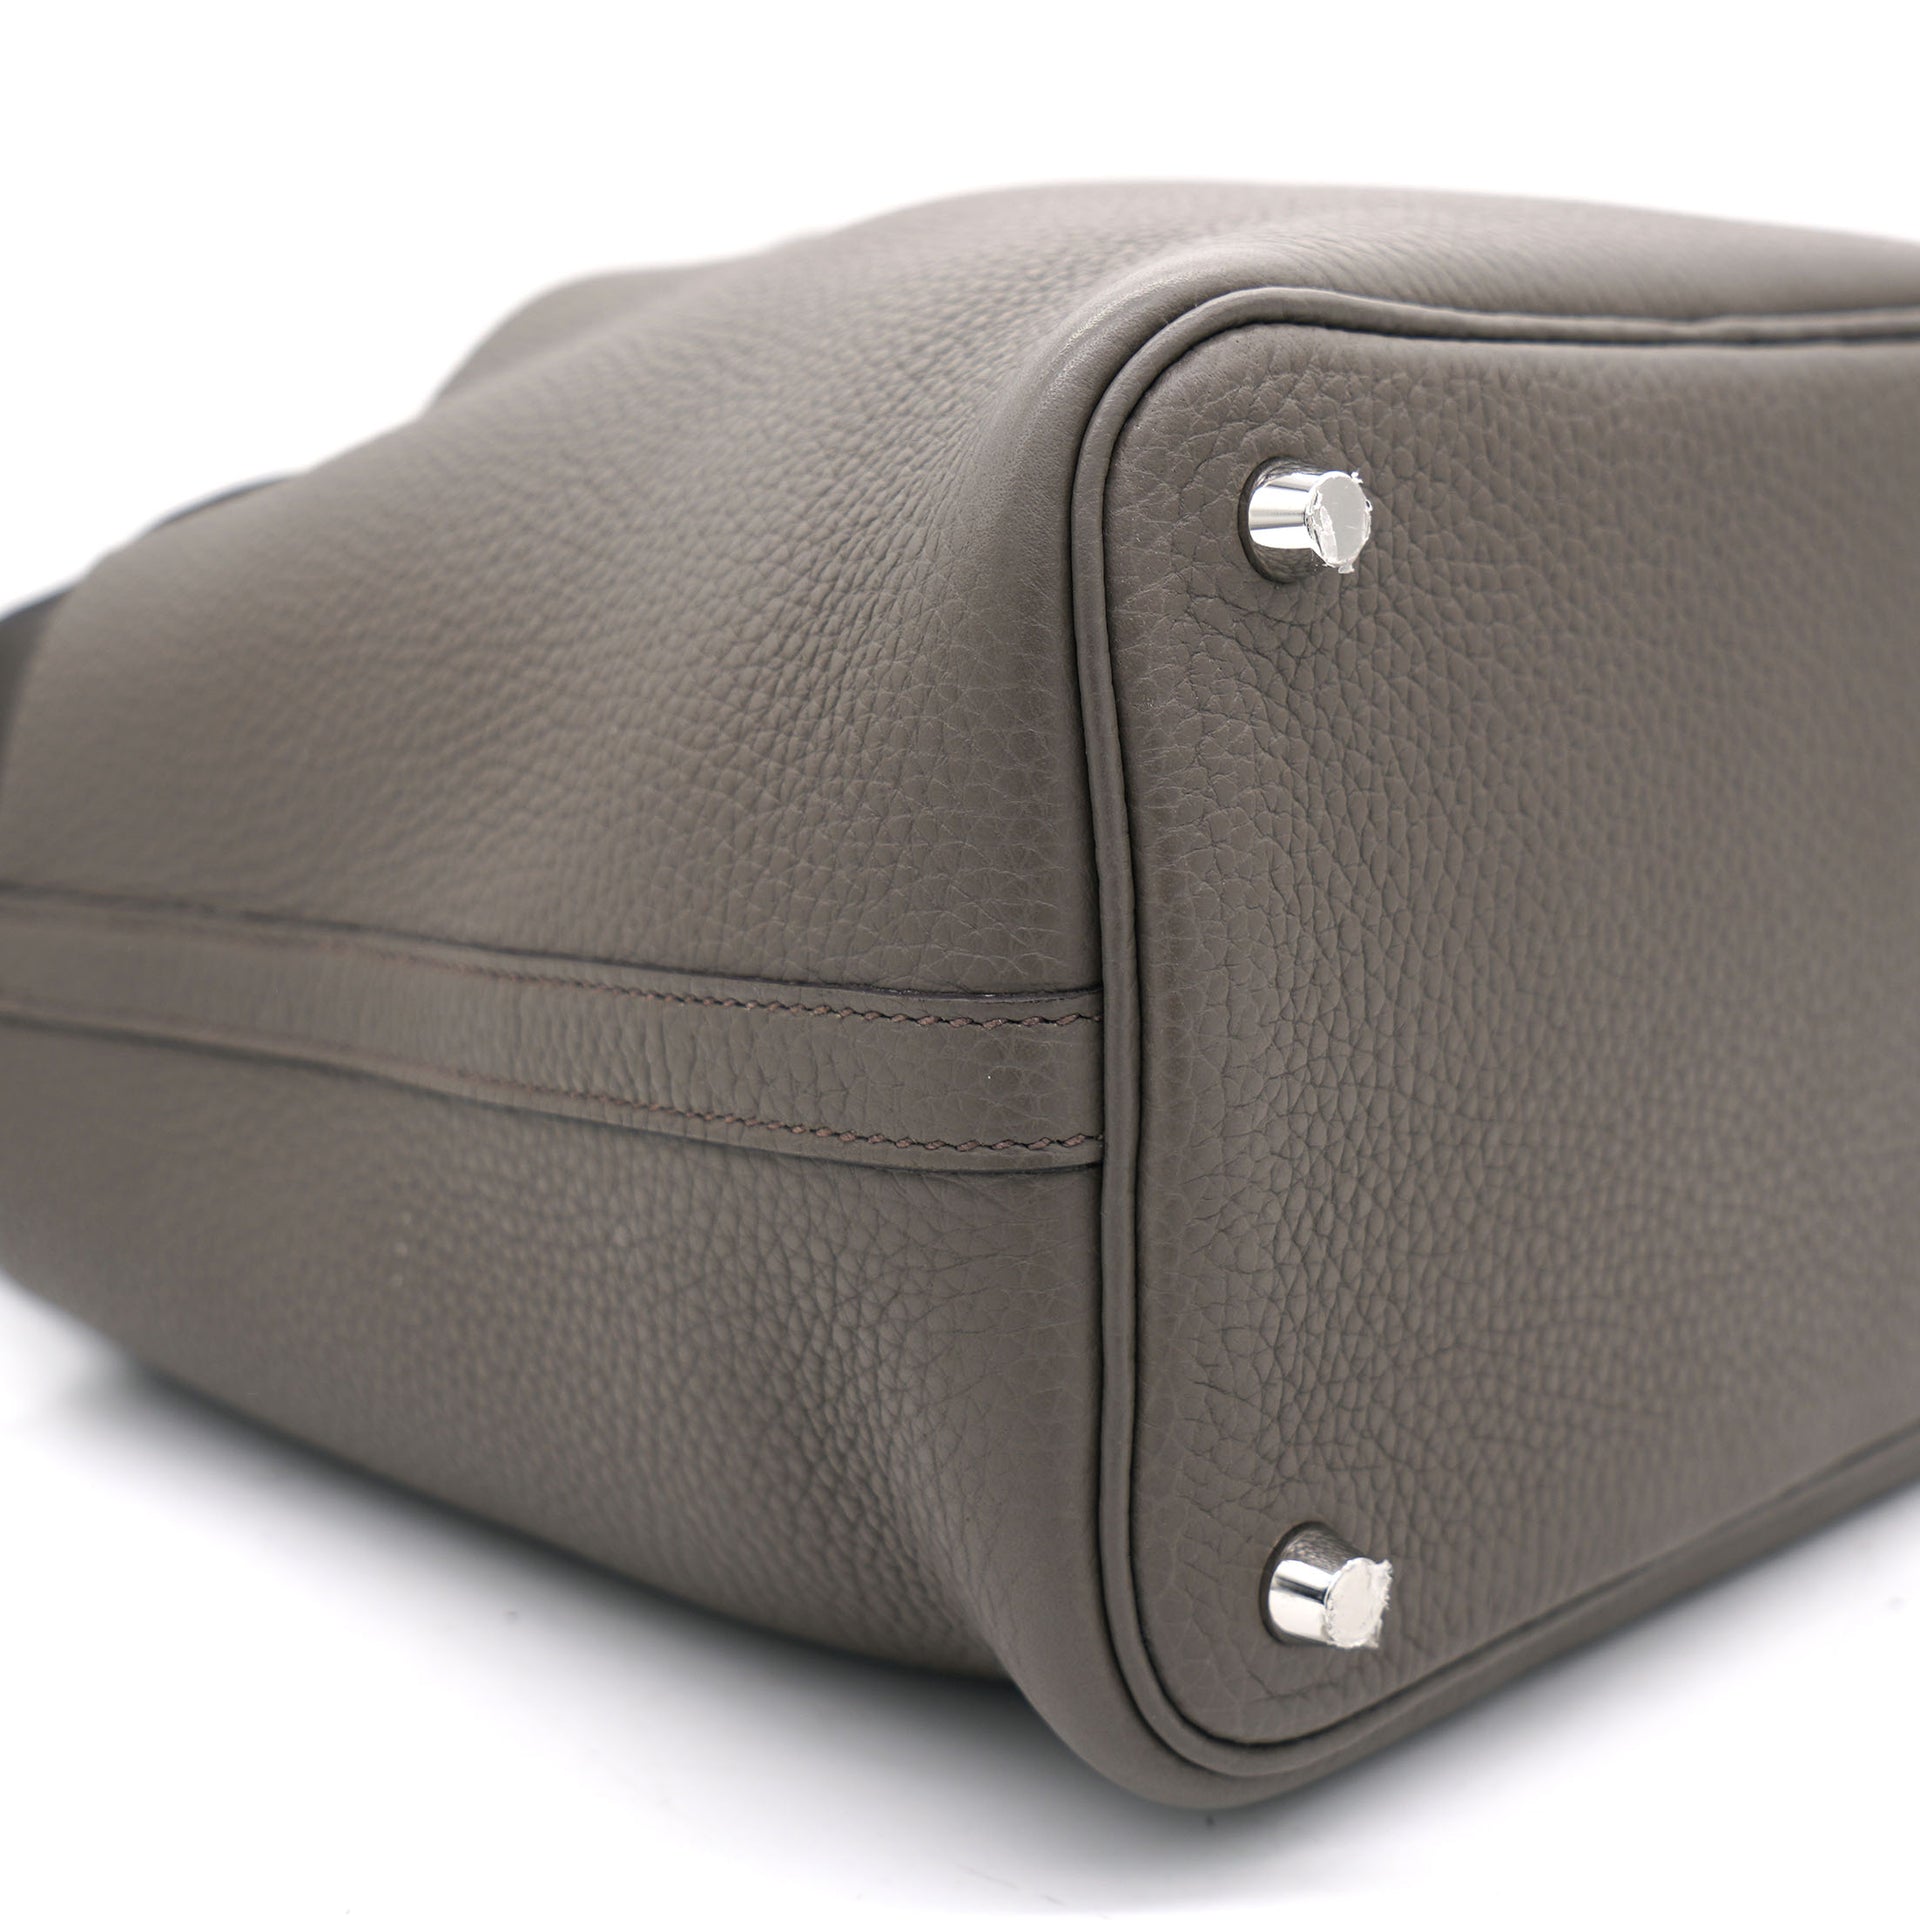 Gris Etain Clemence Leather Palladium Hardware Picotin Lock 18 Bag